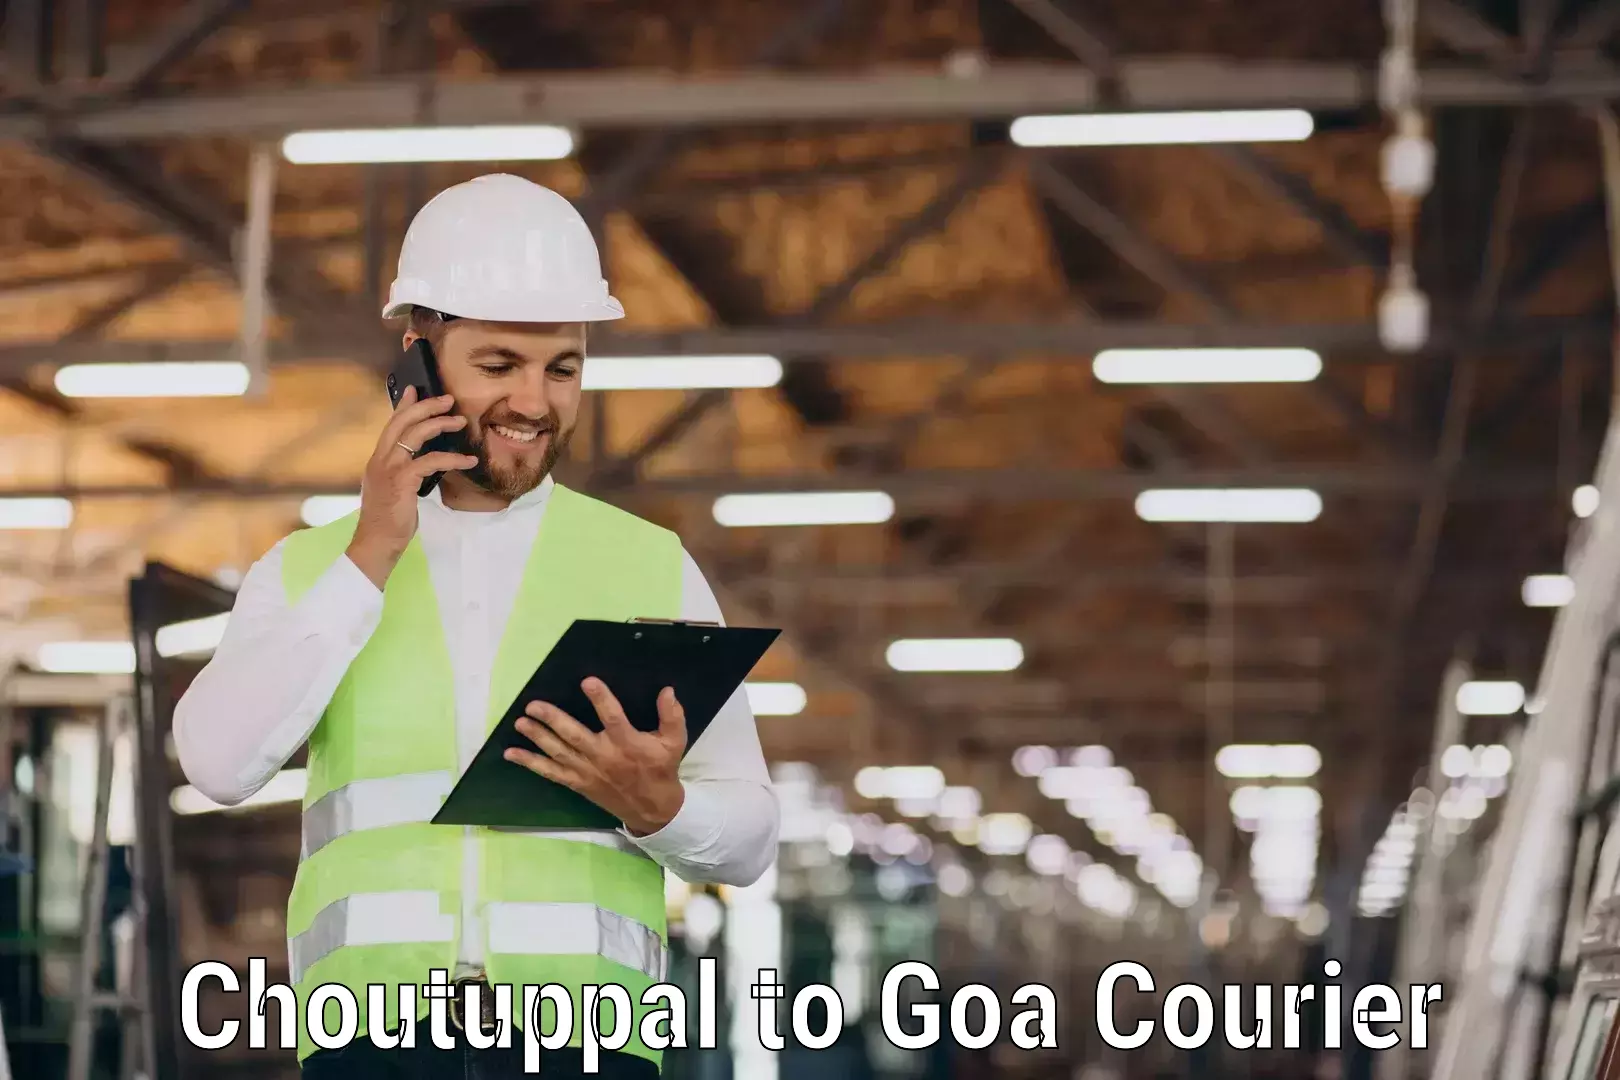 Seamless shipping service Choutuppal to NIT Goa